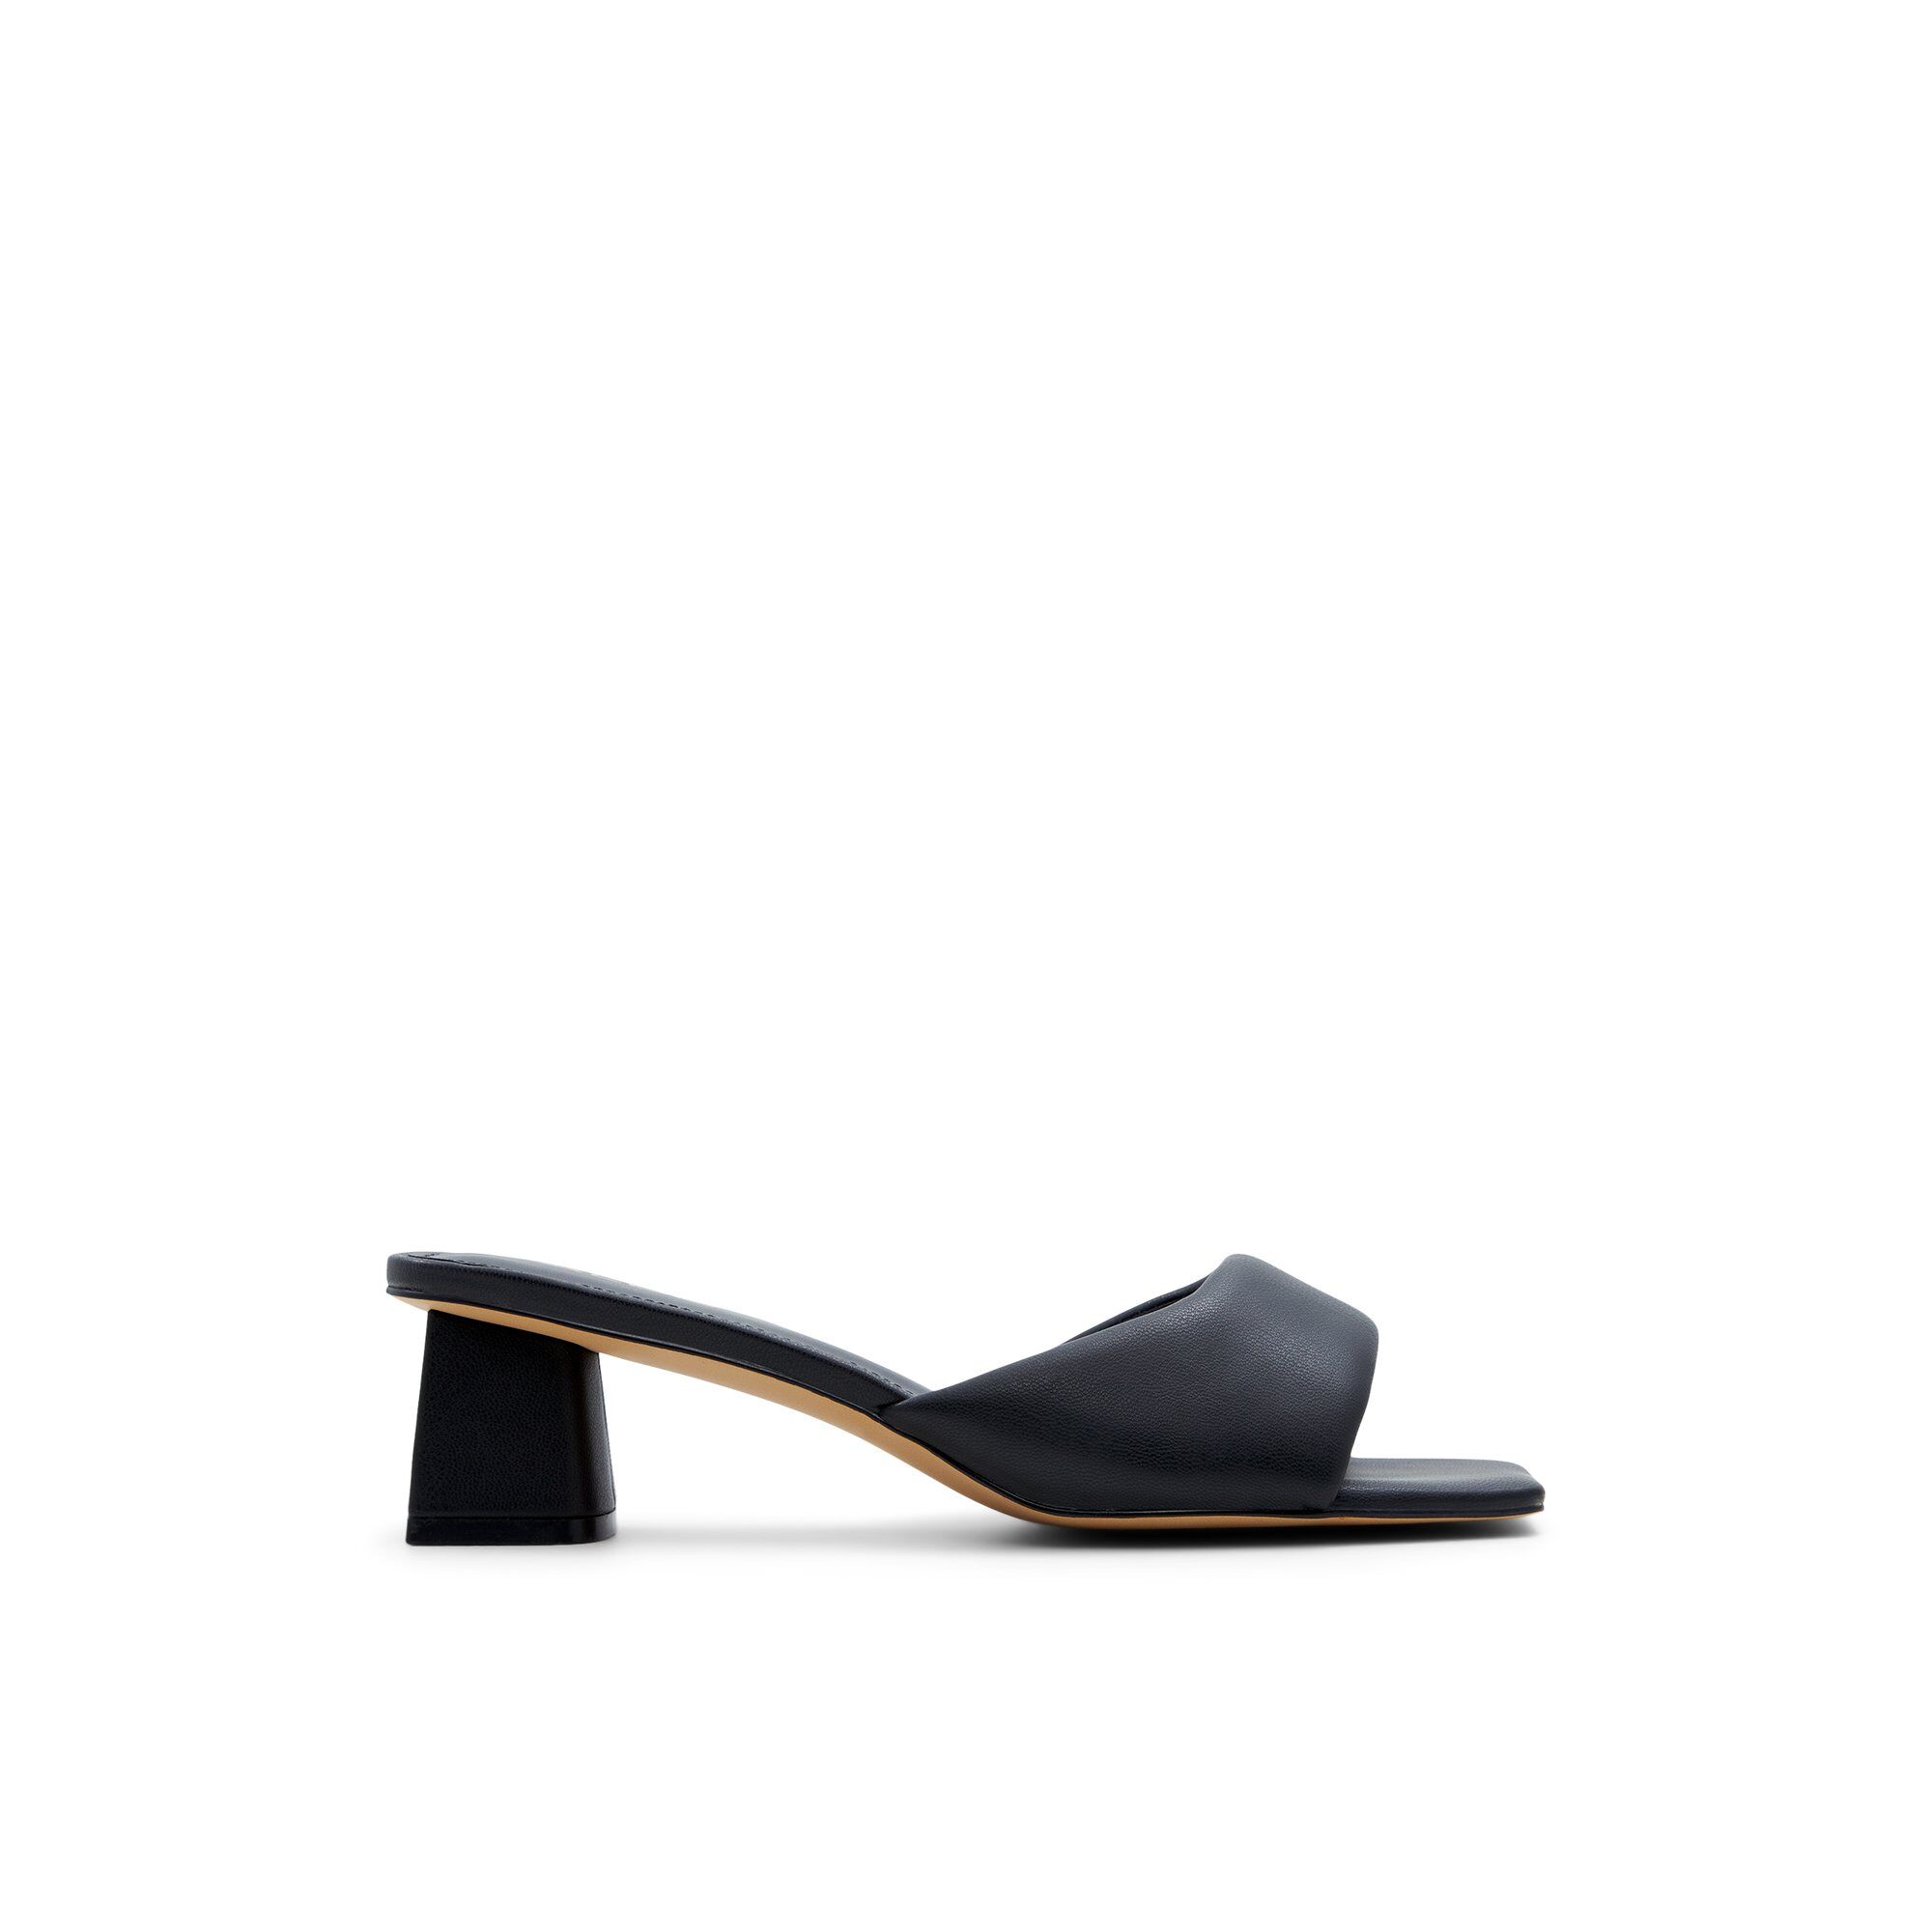 ALDO Aneka - Women's Kitten Heel - Black, Size 6.5